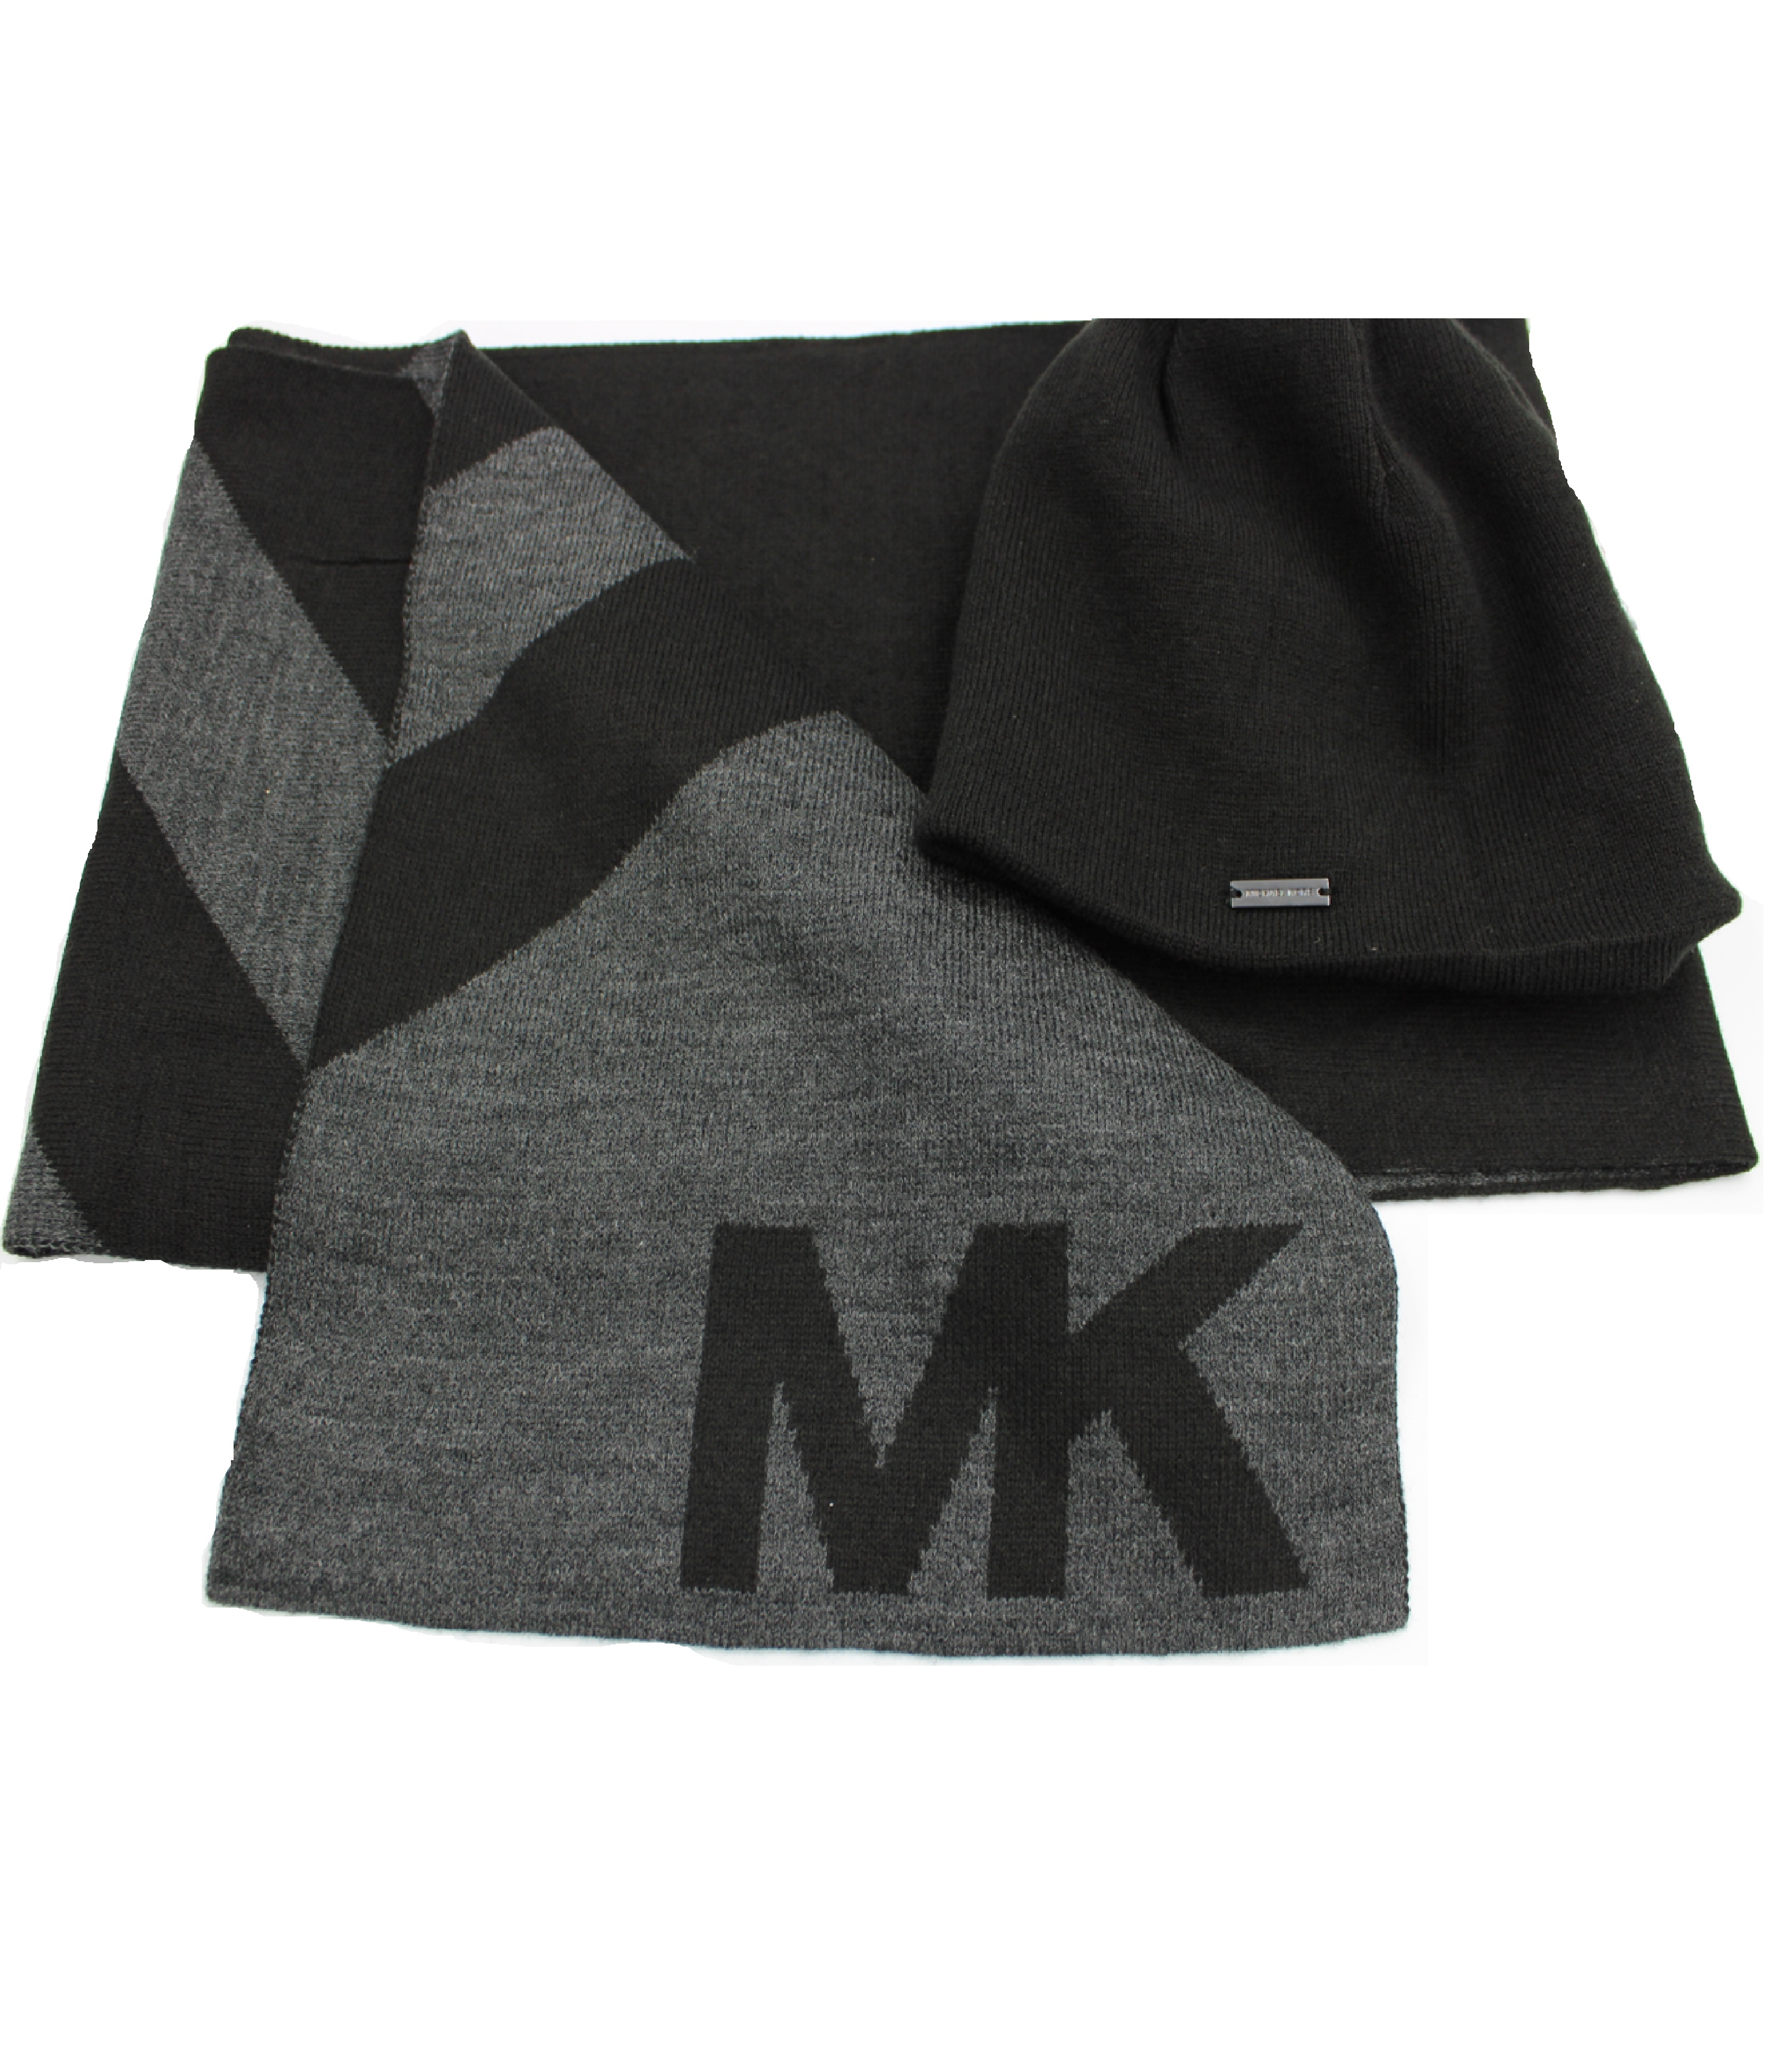 Комплект шапка и шарф мужской Michael Kors 33805C серый/черный